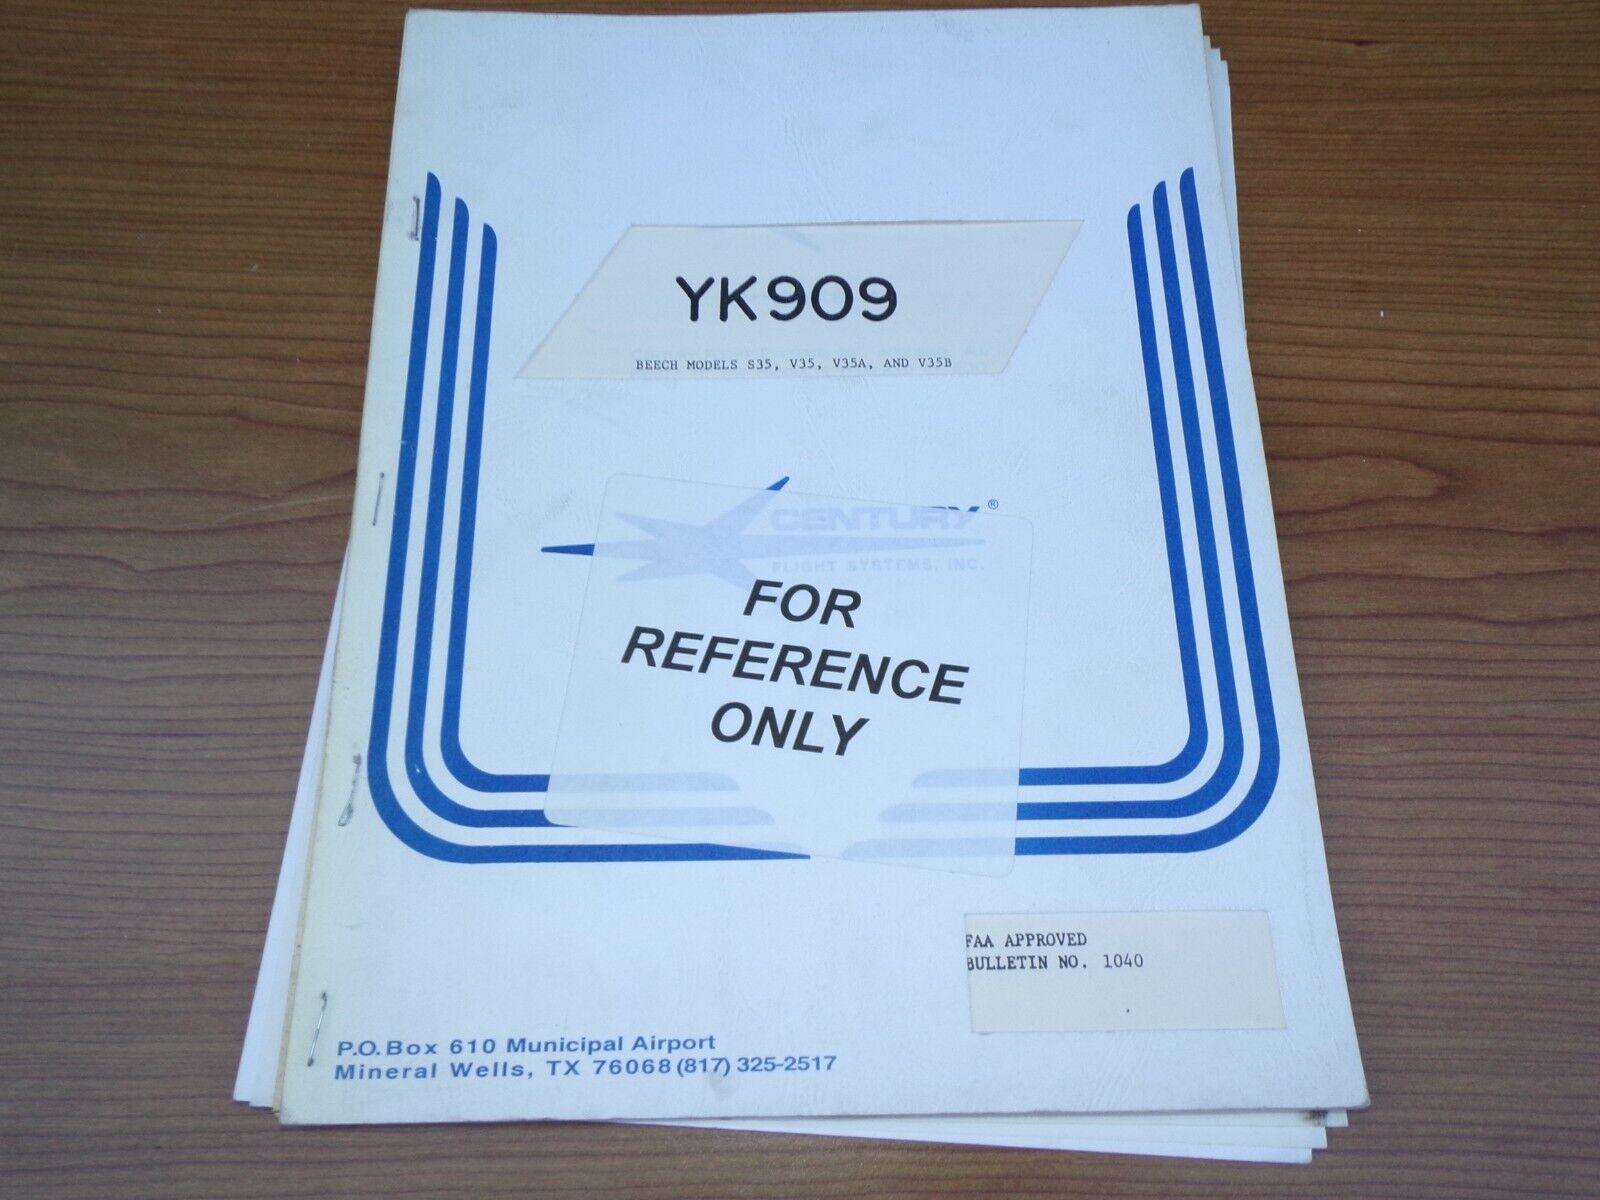 Century Flight Systems YK909 Manual Bulletin No 1040 (Beech Models S35, V35)